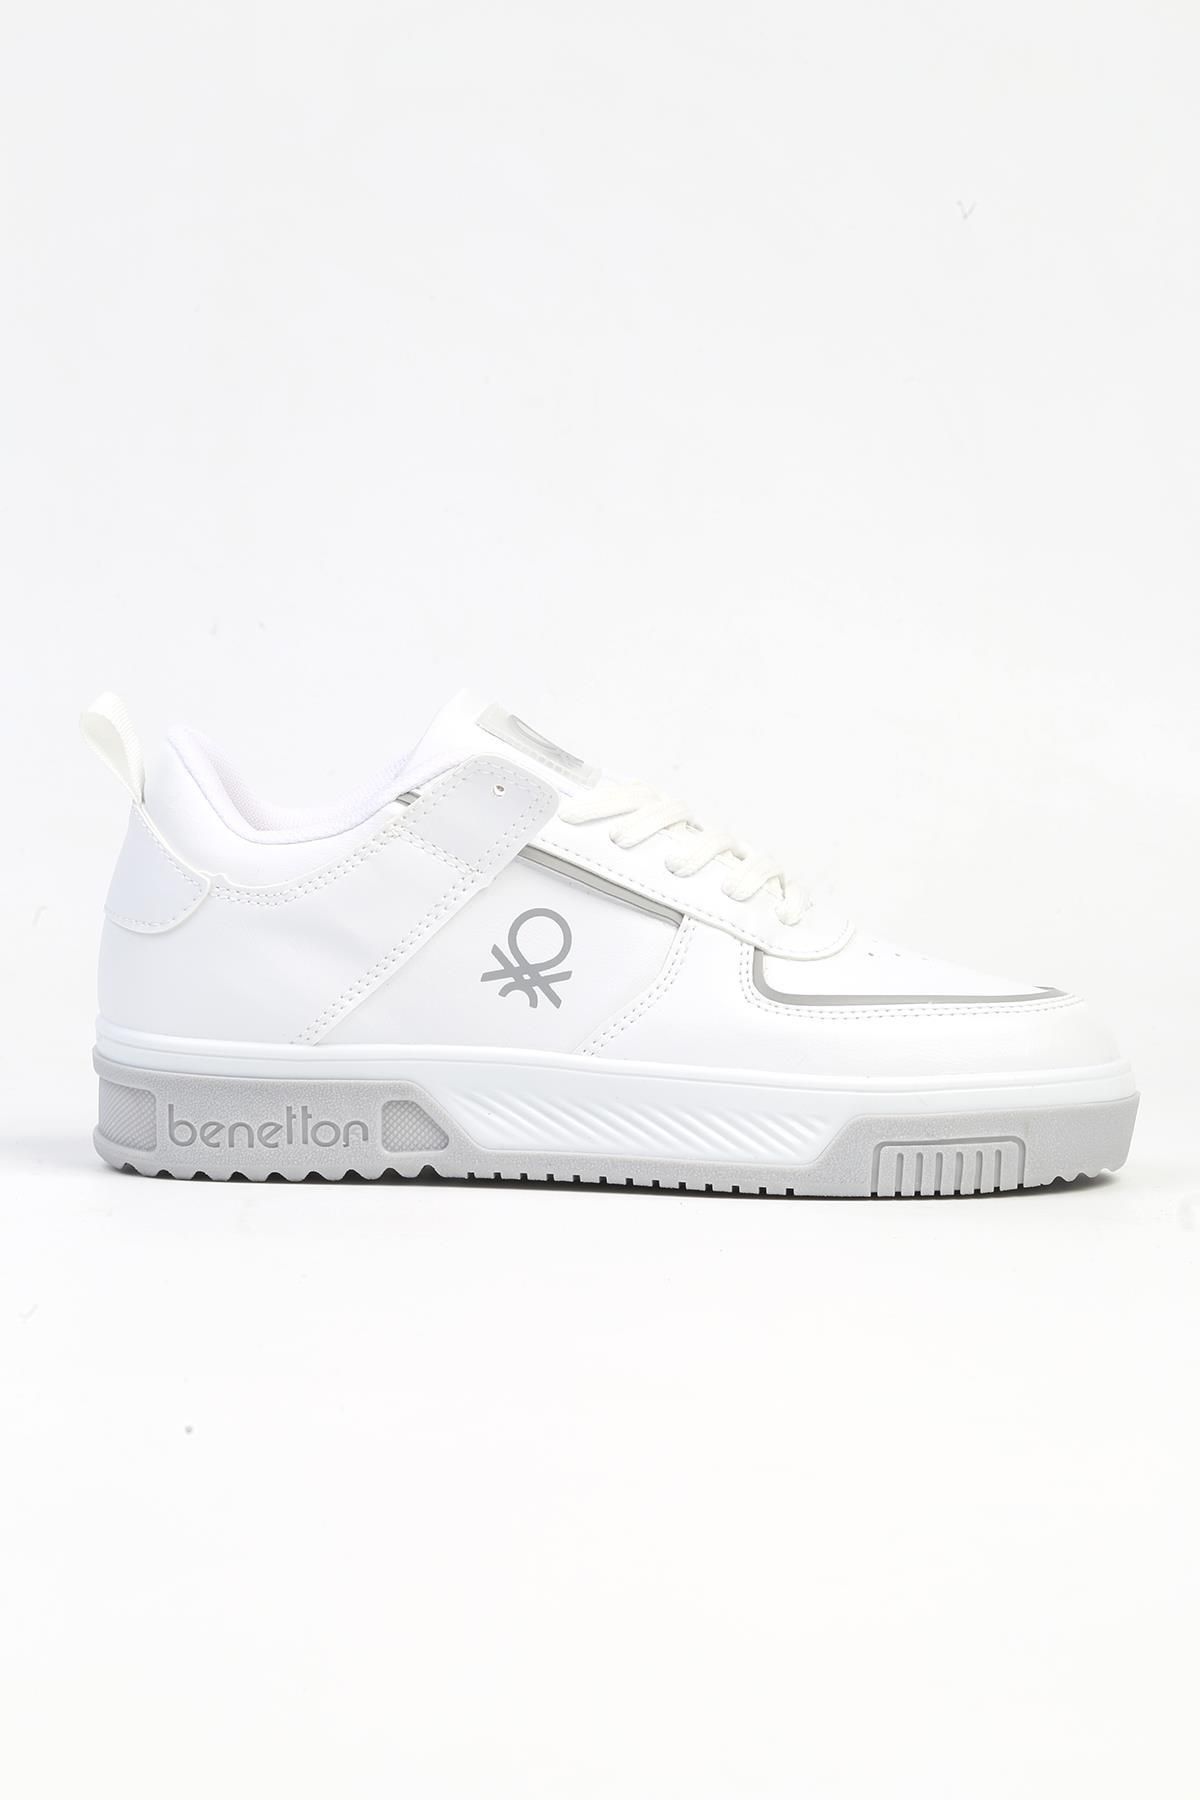 Benetton ® | BN-31086 - 3342 Beyaz - Kadın Spor Ayakkabı